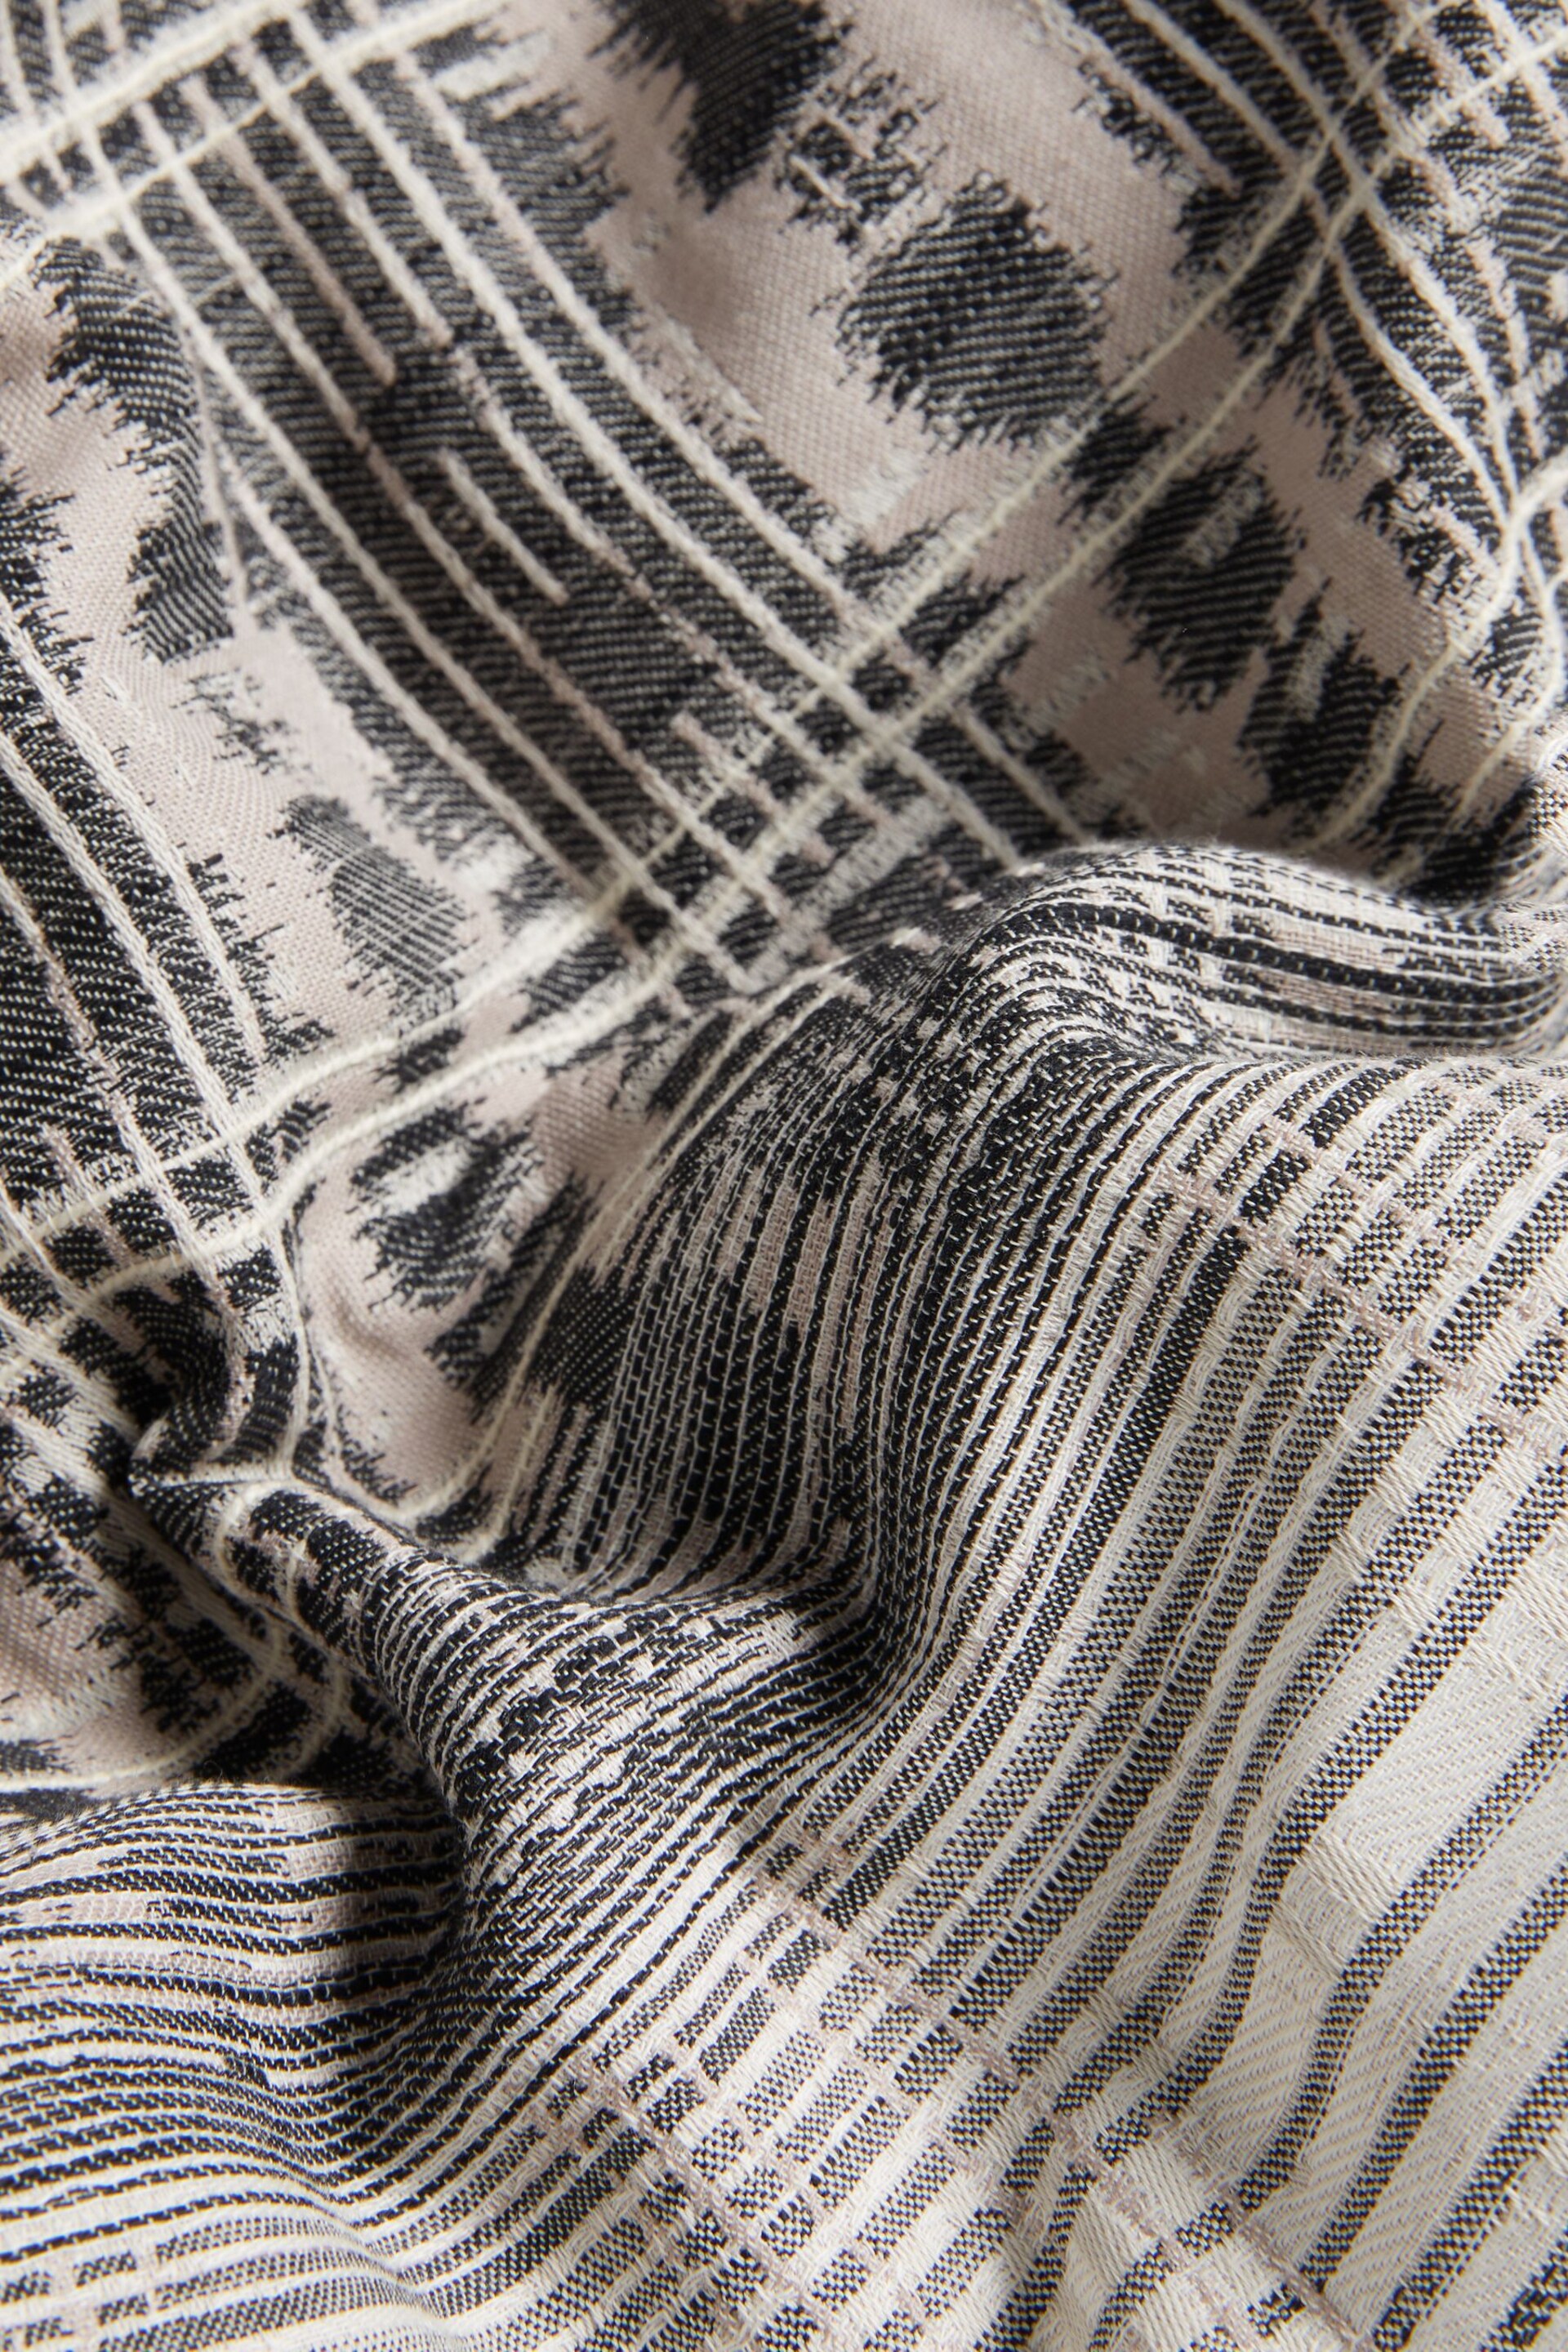 Black/White 100% Cotton Jacquard Ikat Duvet Cover And Pillowcase Set - Image 3 of 3